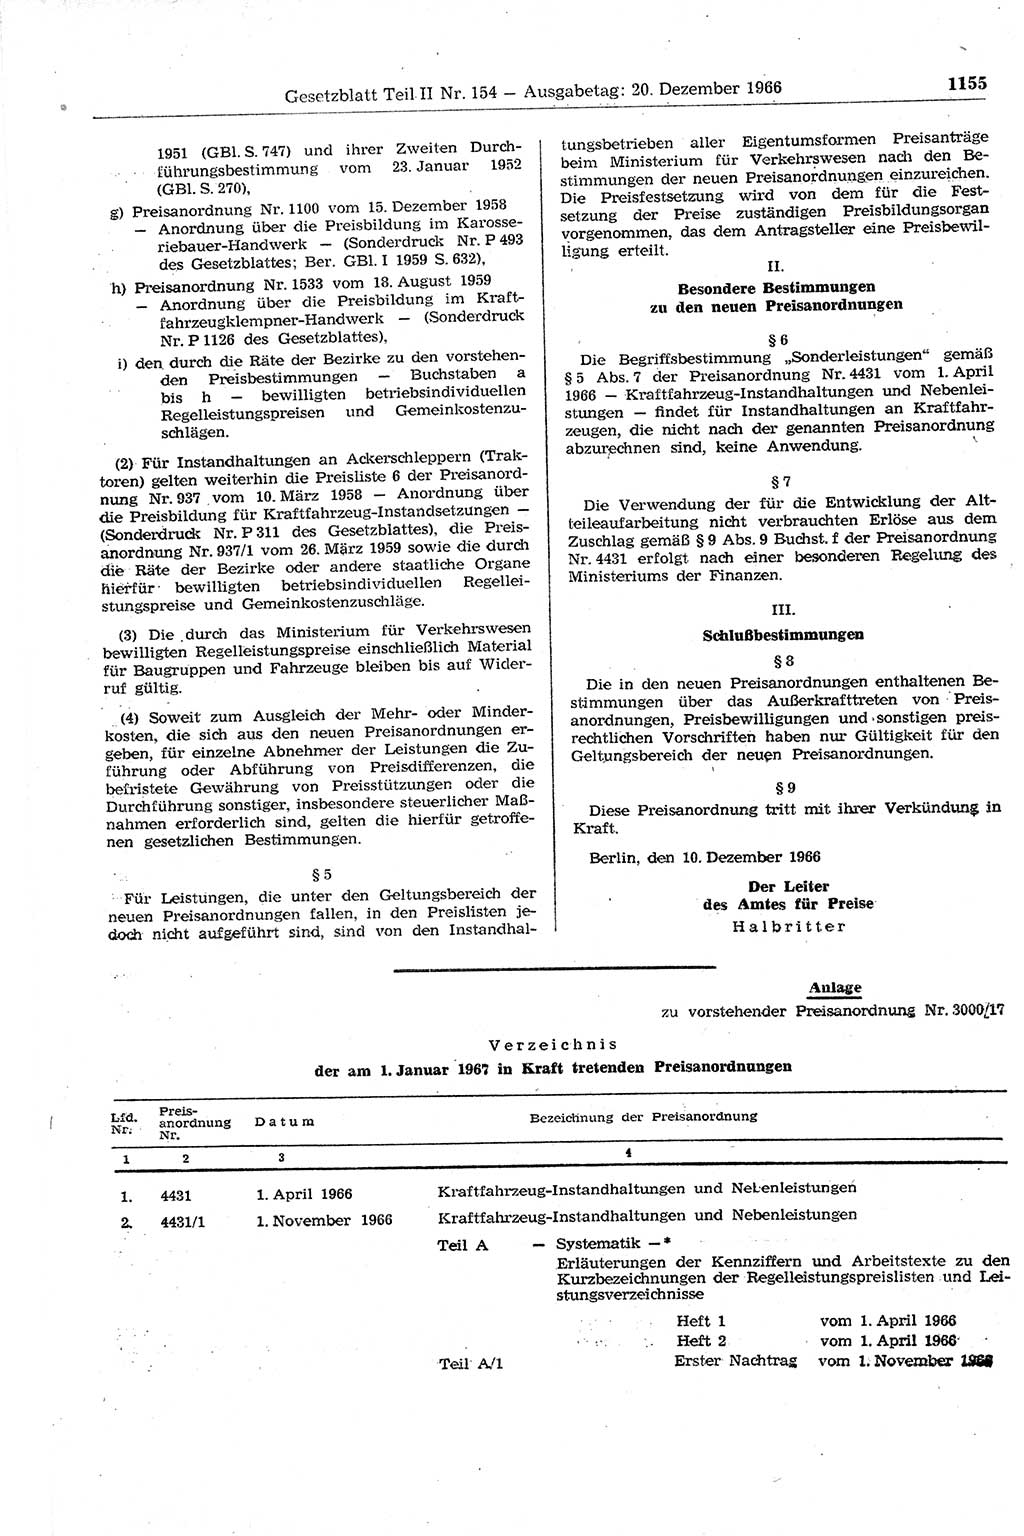 Gesetzblatt (GBl.) der Deutschen Demokratischen Republik (DDR) Teil ⅠⅠ 1966, Seite 1155 (GBl. DDR ⅠⅠ 1966, S. 1155)